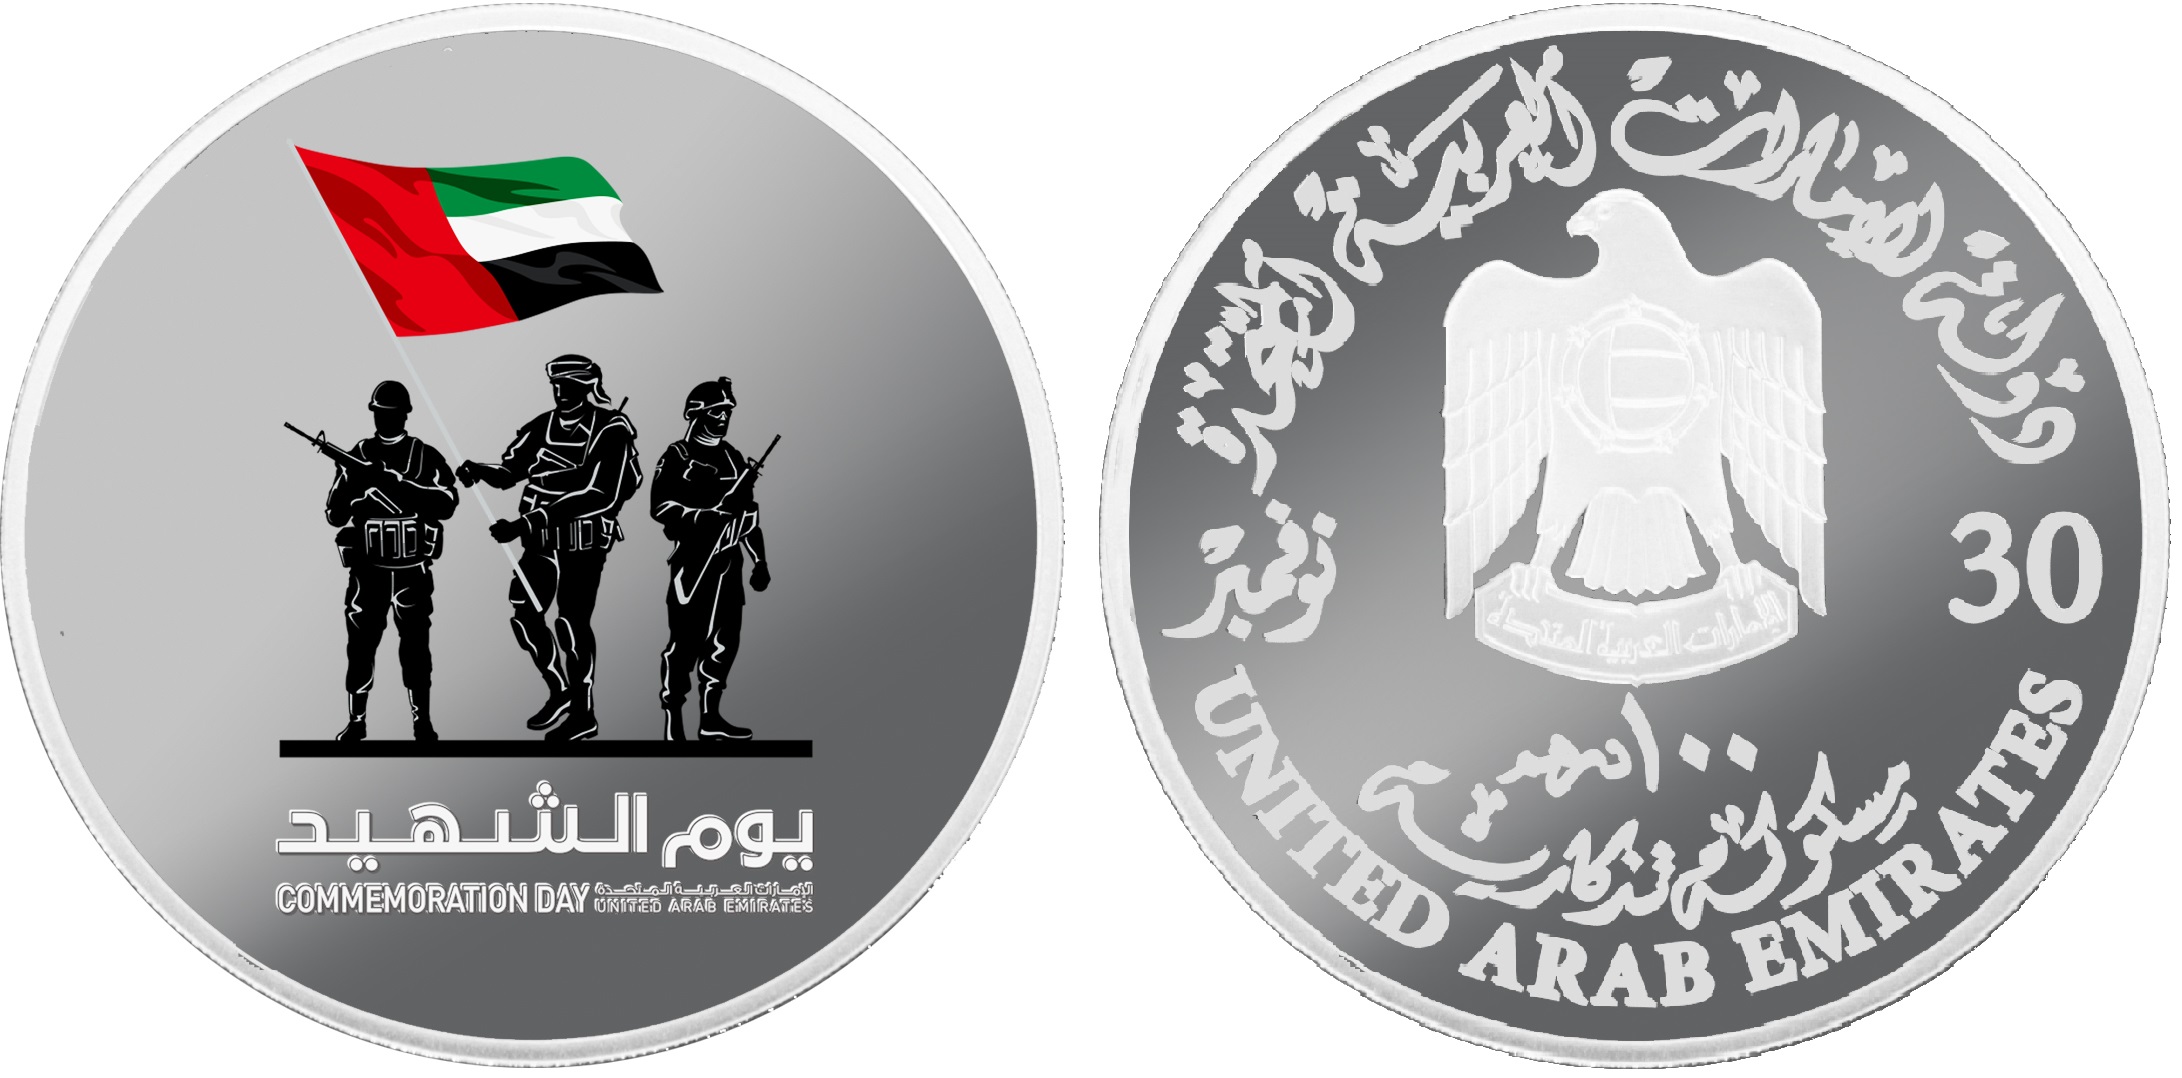 アラブ首長国連邦記念銀貨幣の画像